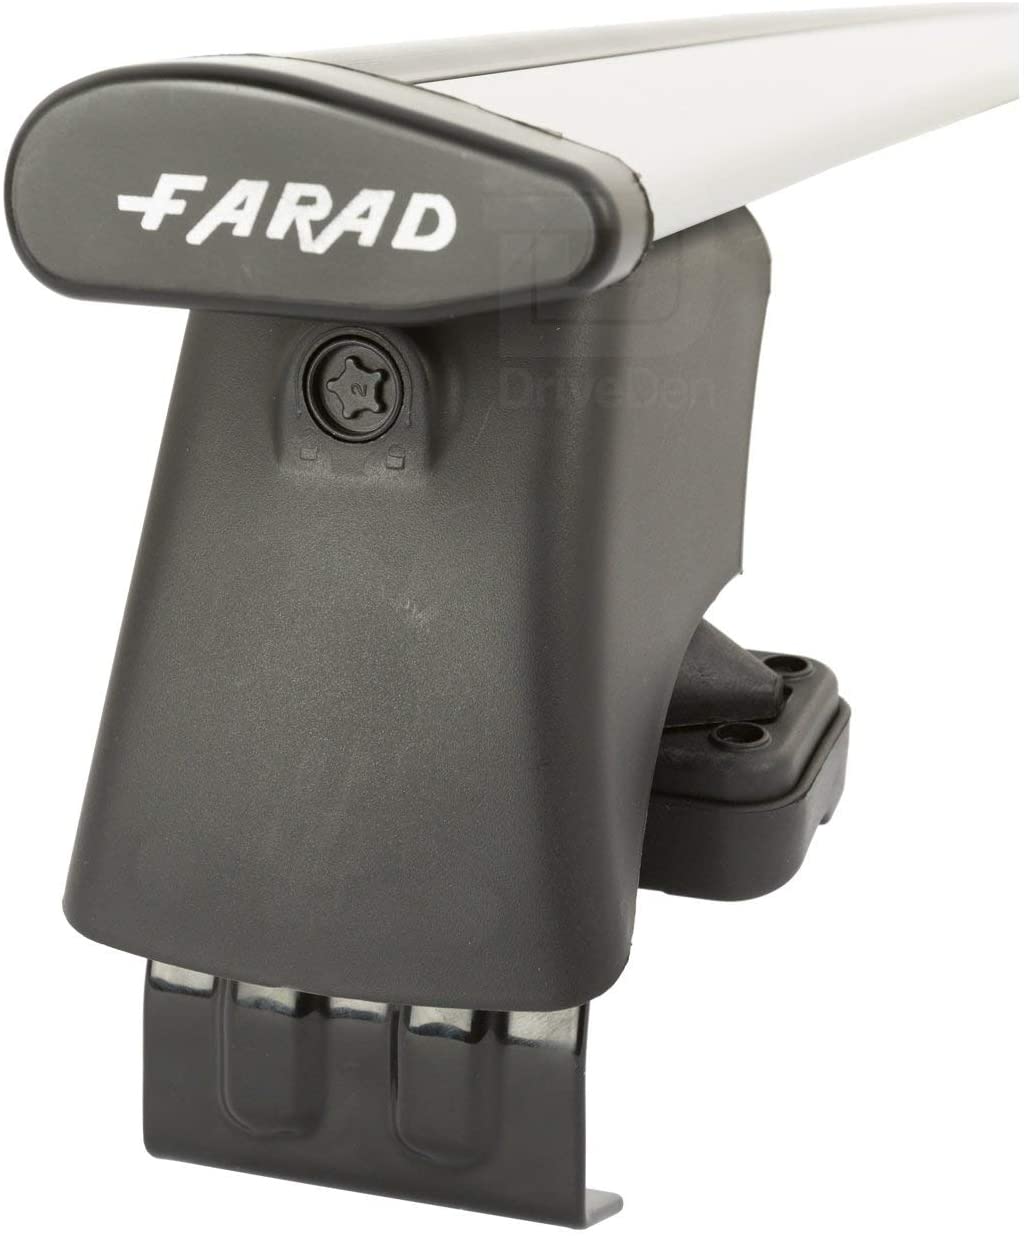 FARAD-Kit H2 per barre portatutto - Audi A1 2010> (senza corrimano)